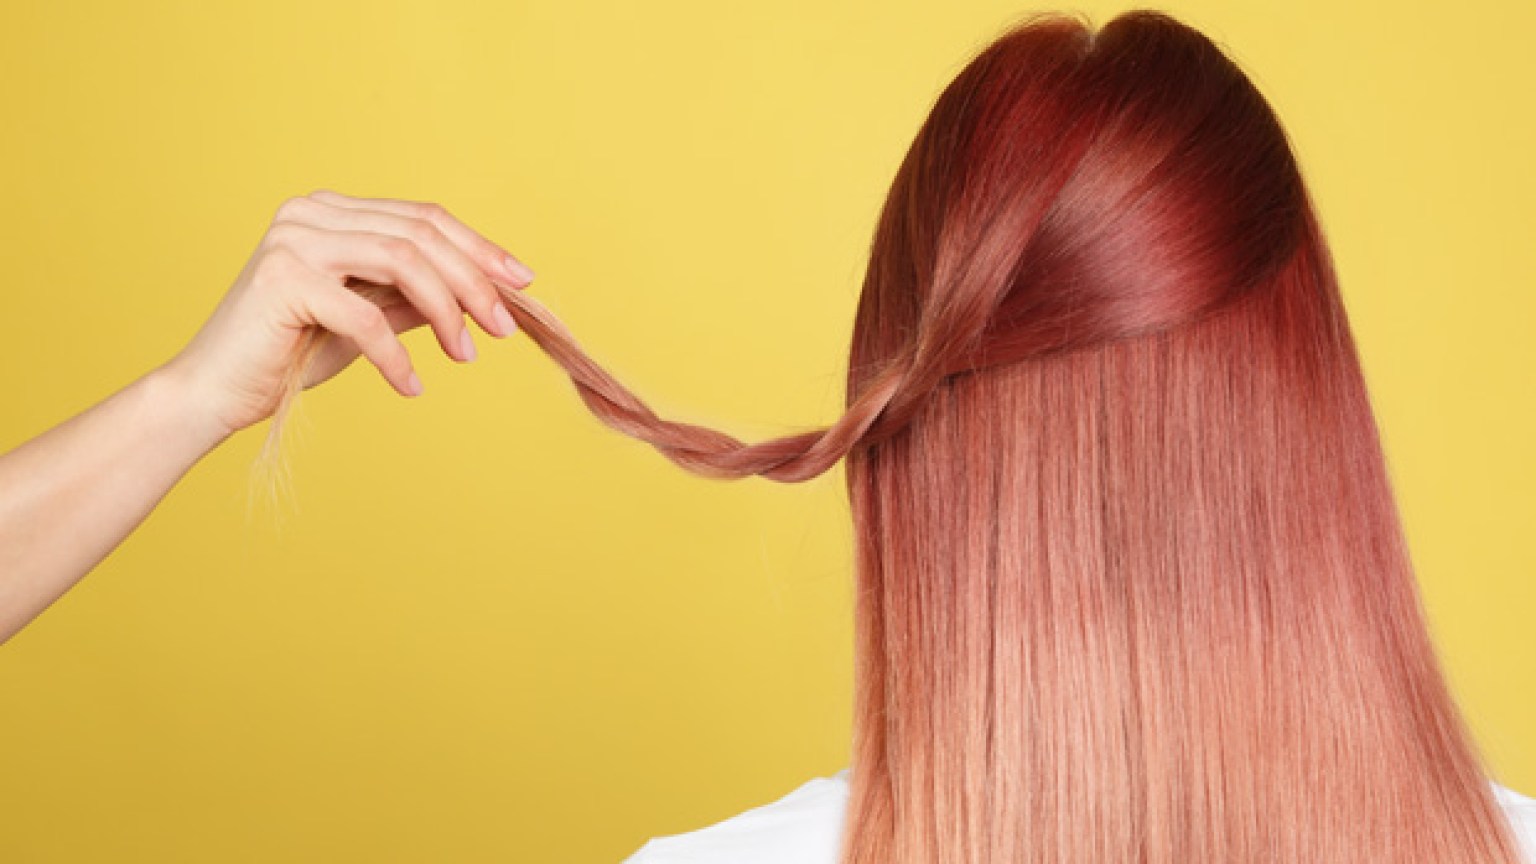 2. DIY Rose Gold Hair Dye Recipe - wide 7